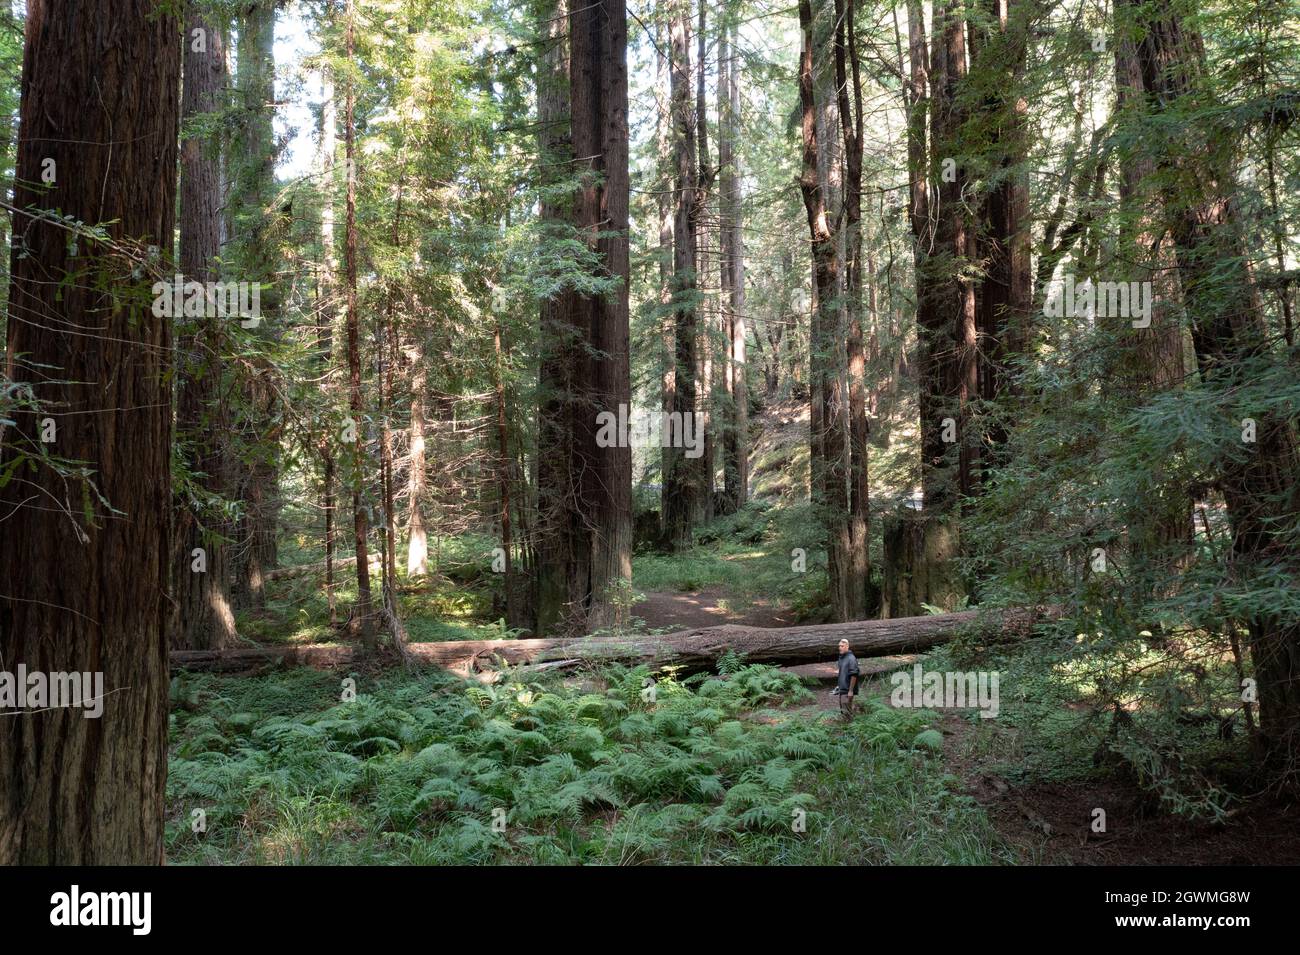 En Mendocino, California, crecen enormes árboles de secoya costeros. Esta región del norte de California es el hogar de extensos bosques de secoyas. Foto de stock